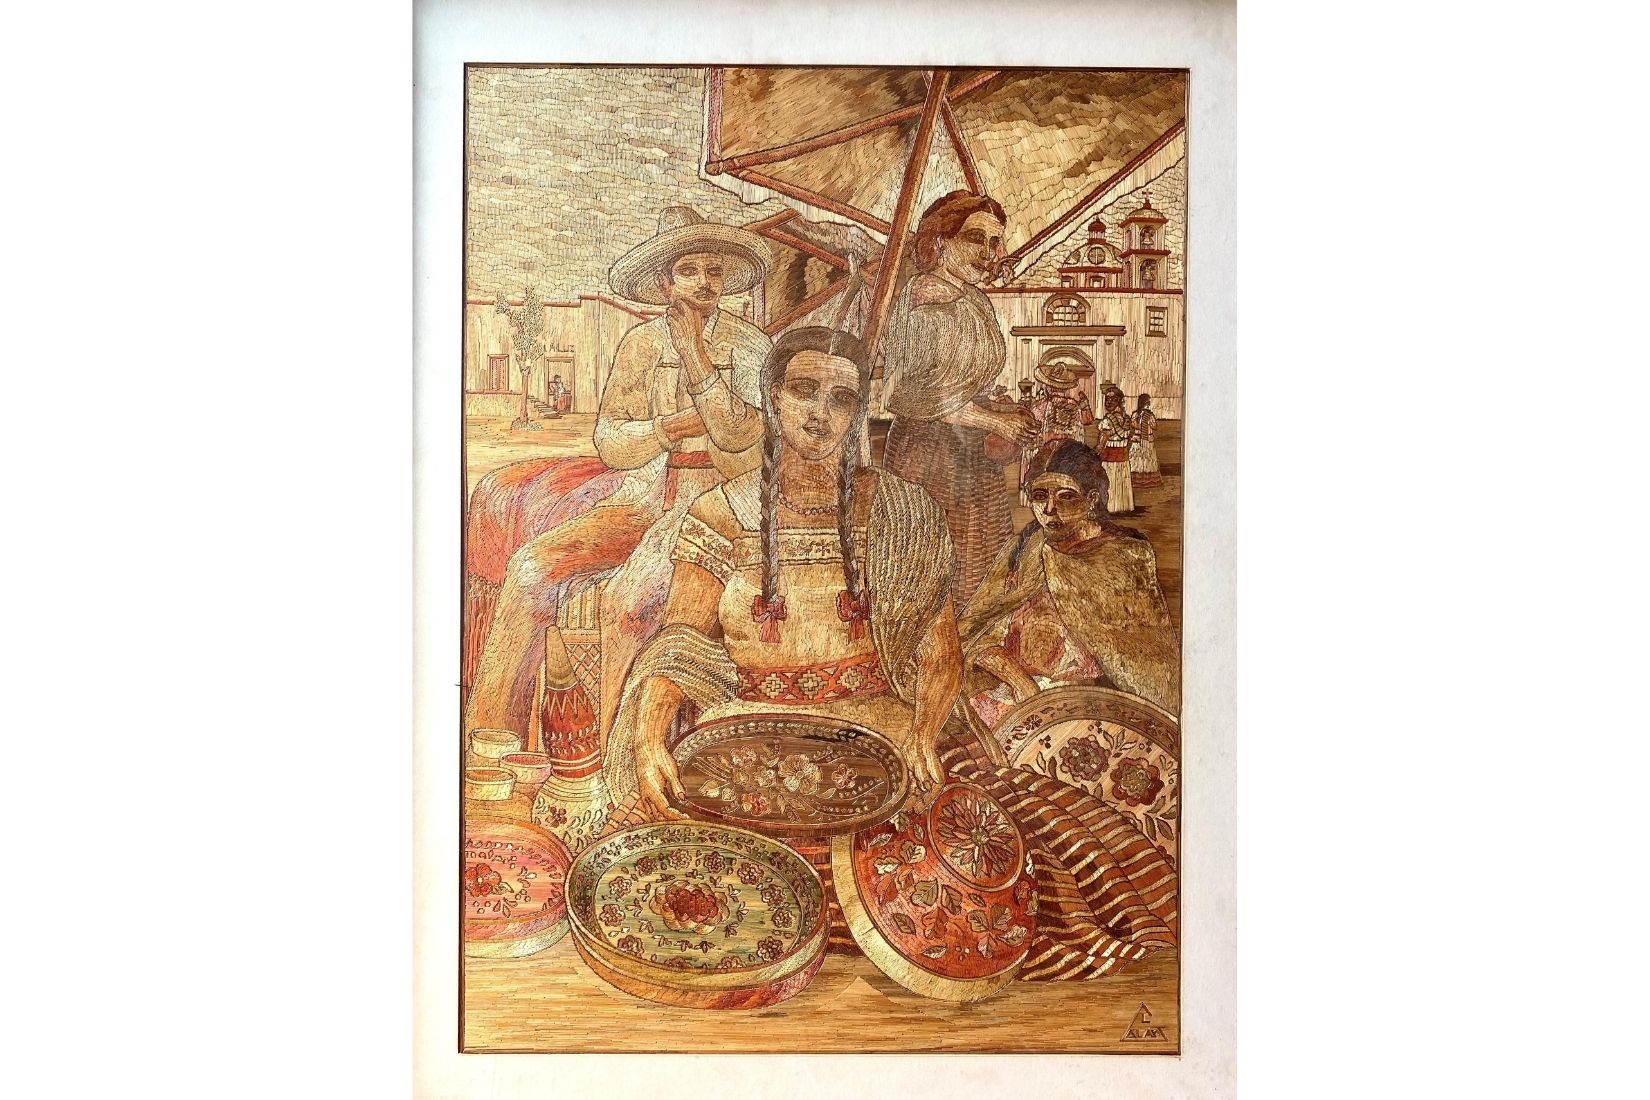 Vendedora de bateas. Popotillo natural y pintado. Artesano Guillermo Olay. Tlalpujahua, Mich. Col. Instituto del Artesano Michoacano.